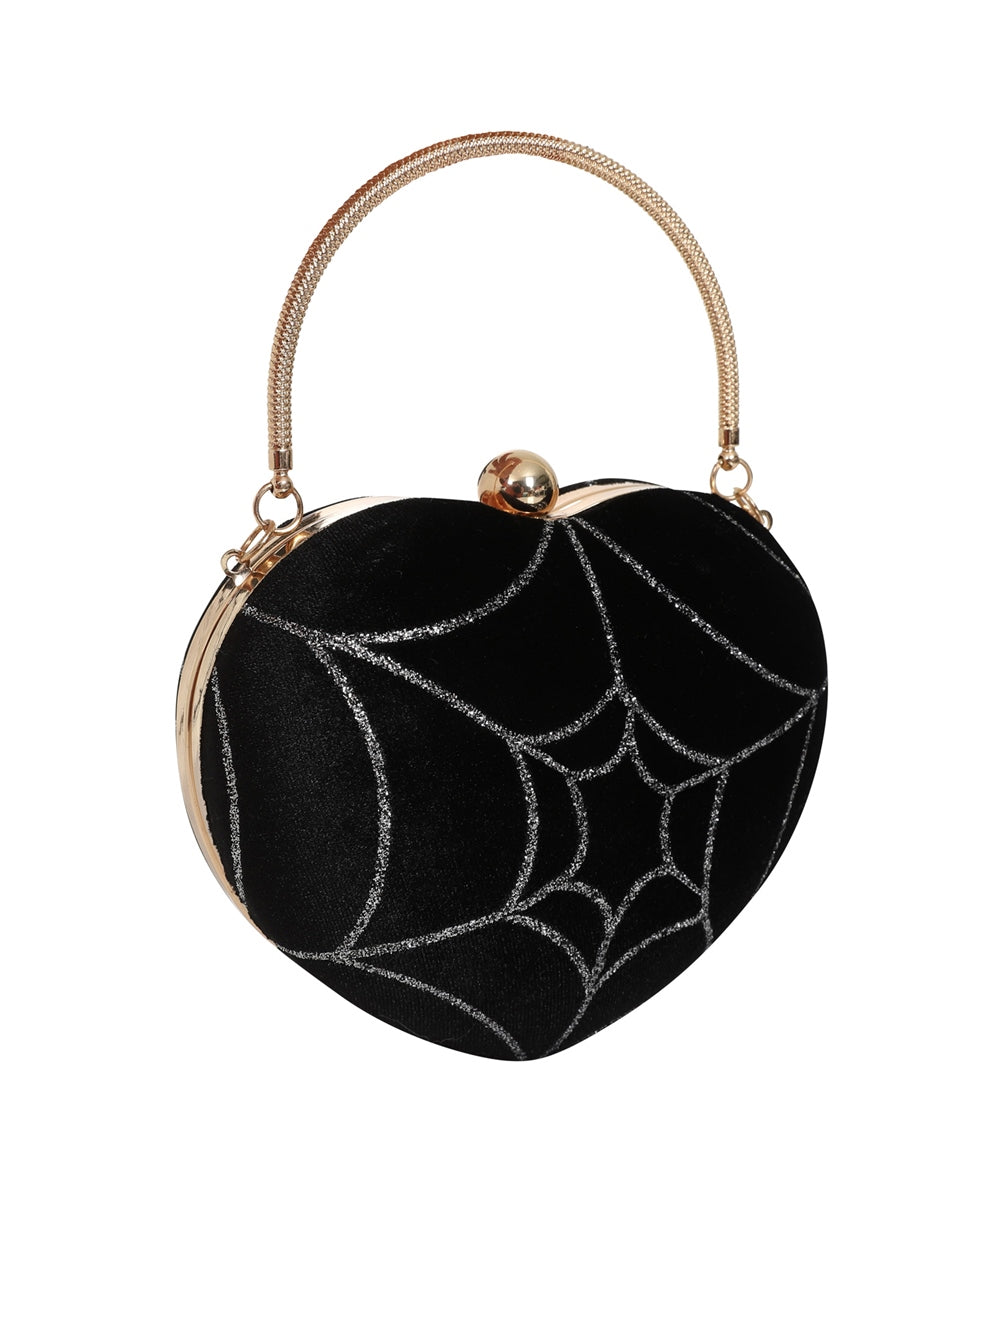 Lou Spiderweb Heart Bag